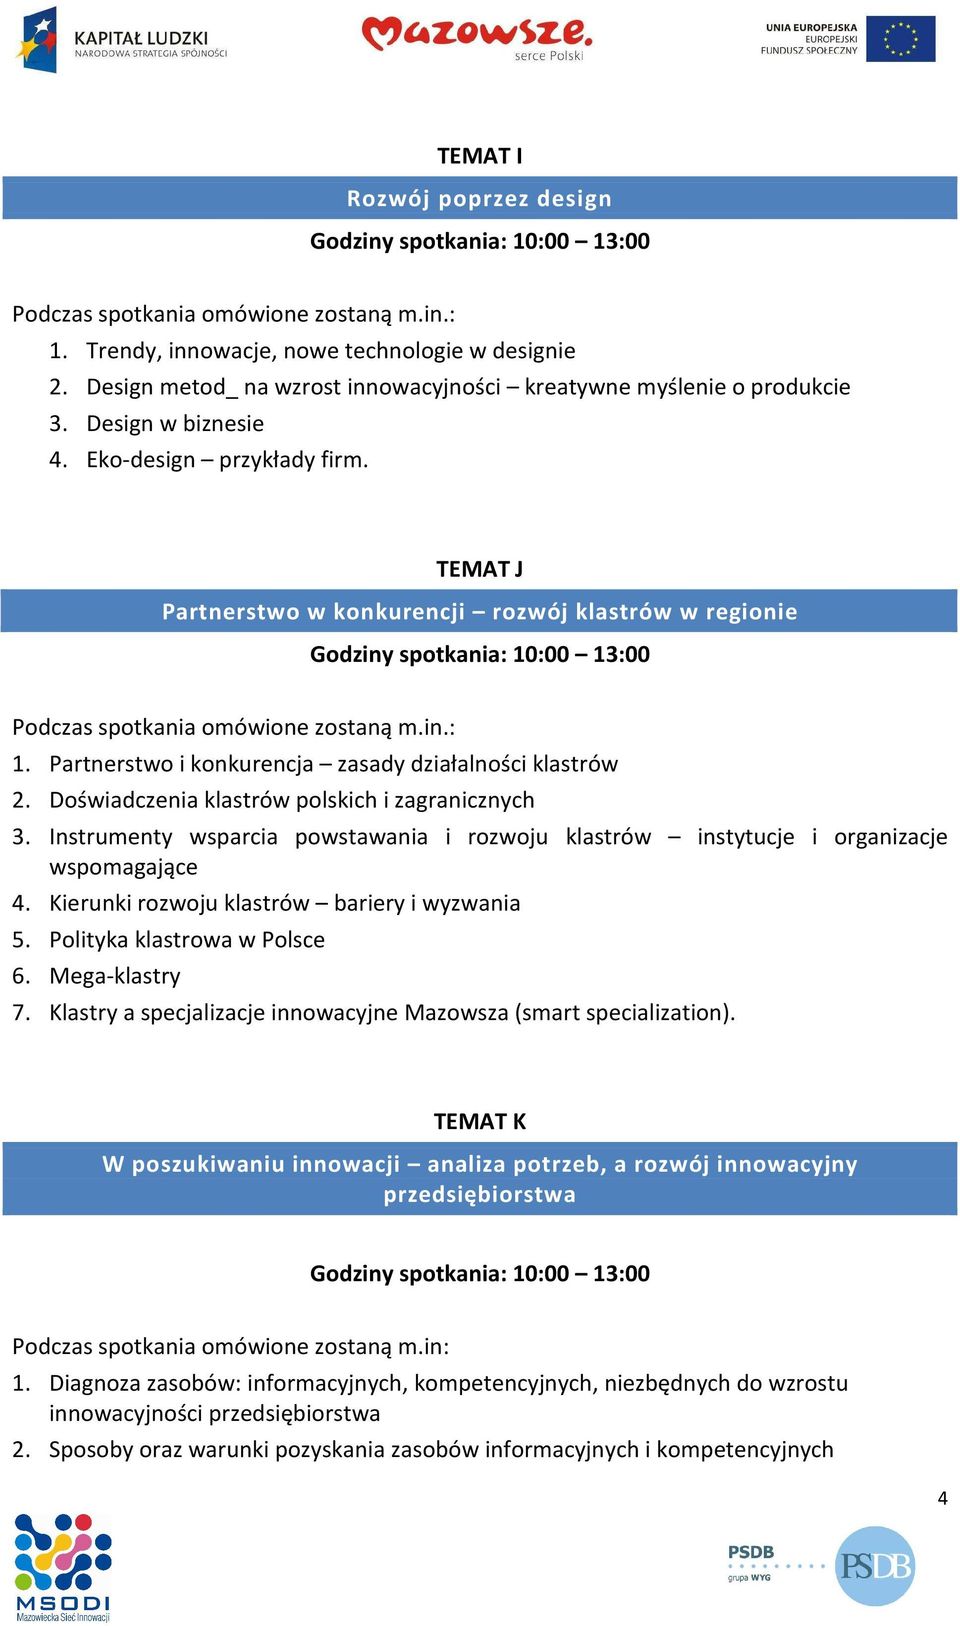 Instrumenty wsparcia powstawania i rozwoju klastrów instytucje i organizacje wspomagające 4. Kierunki rozwoju klastrów bariery i wyzwania 5. Polityka klastrowa w Polsce 6. Mega-klastry 7.